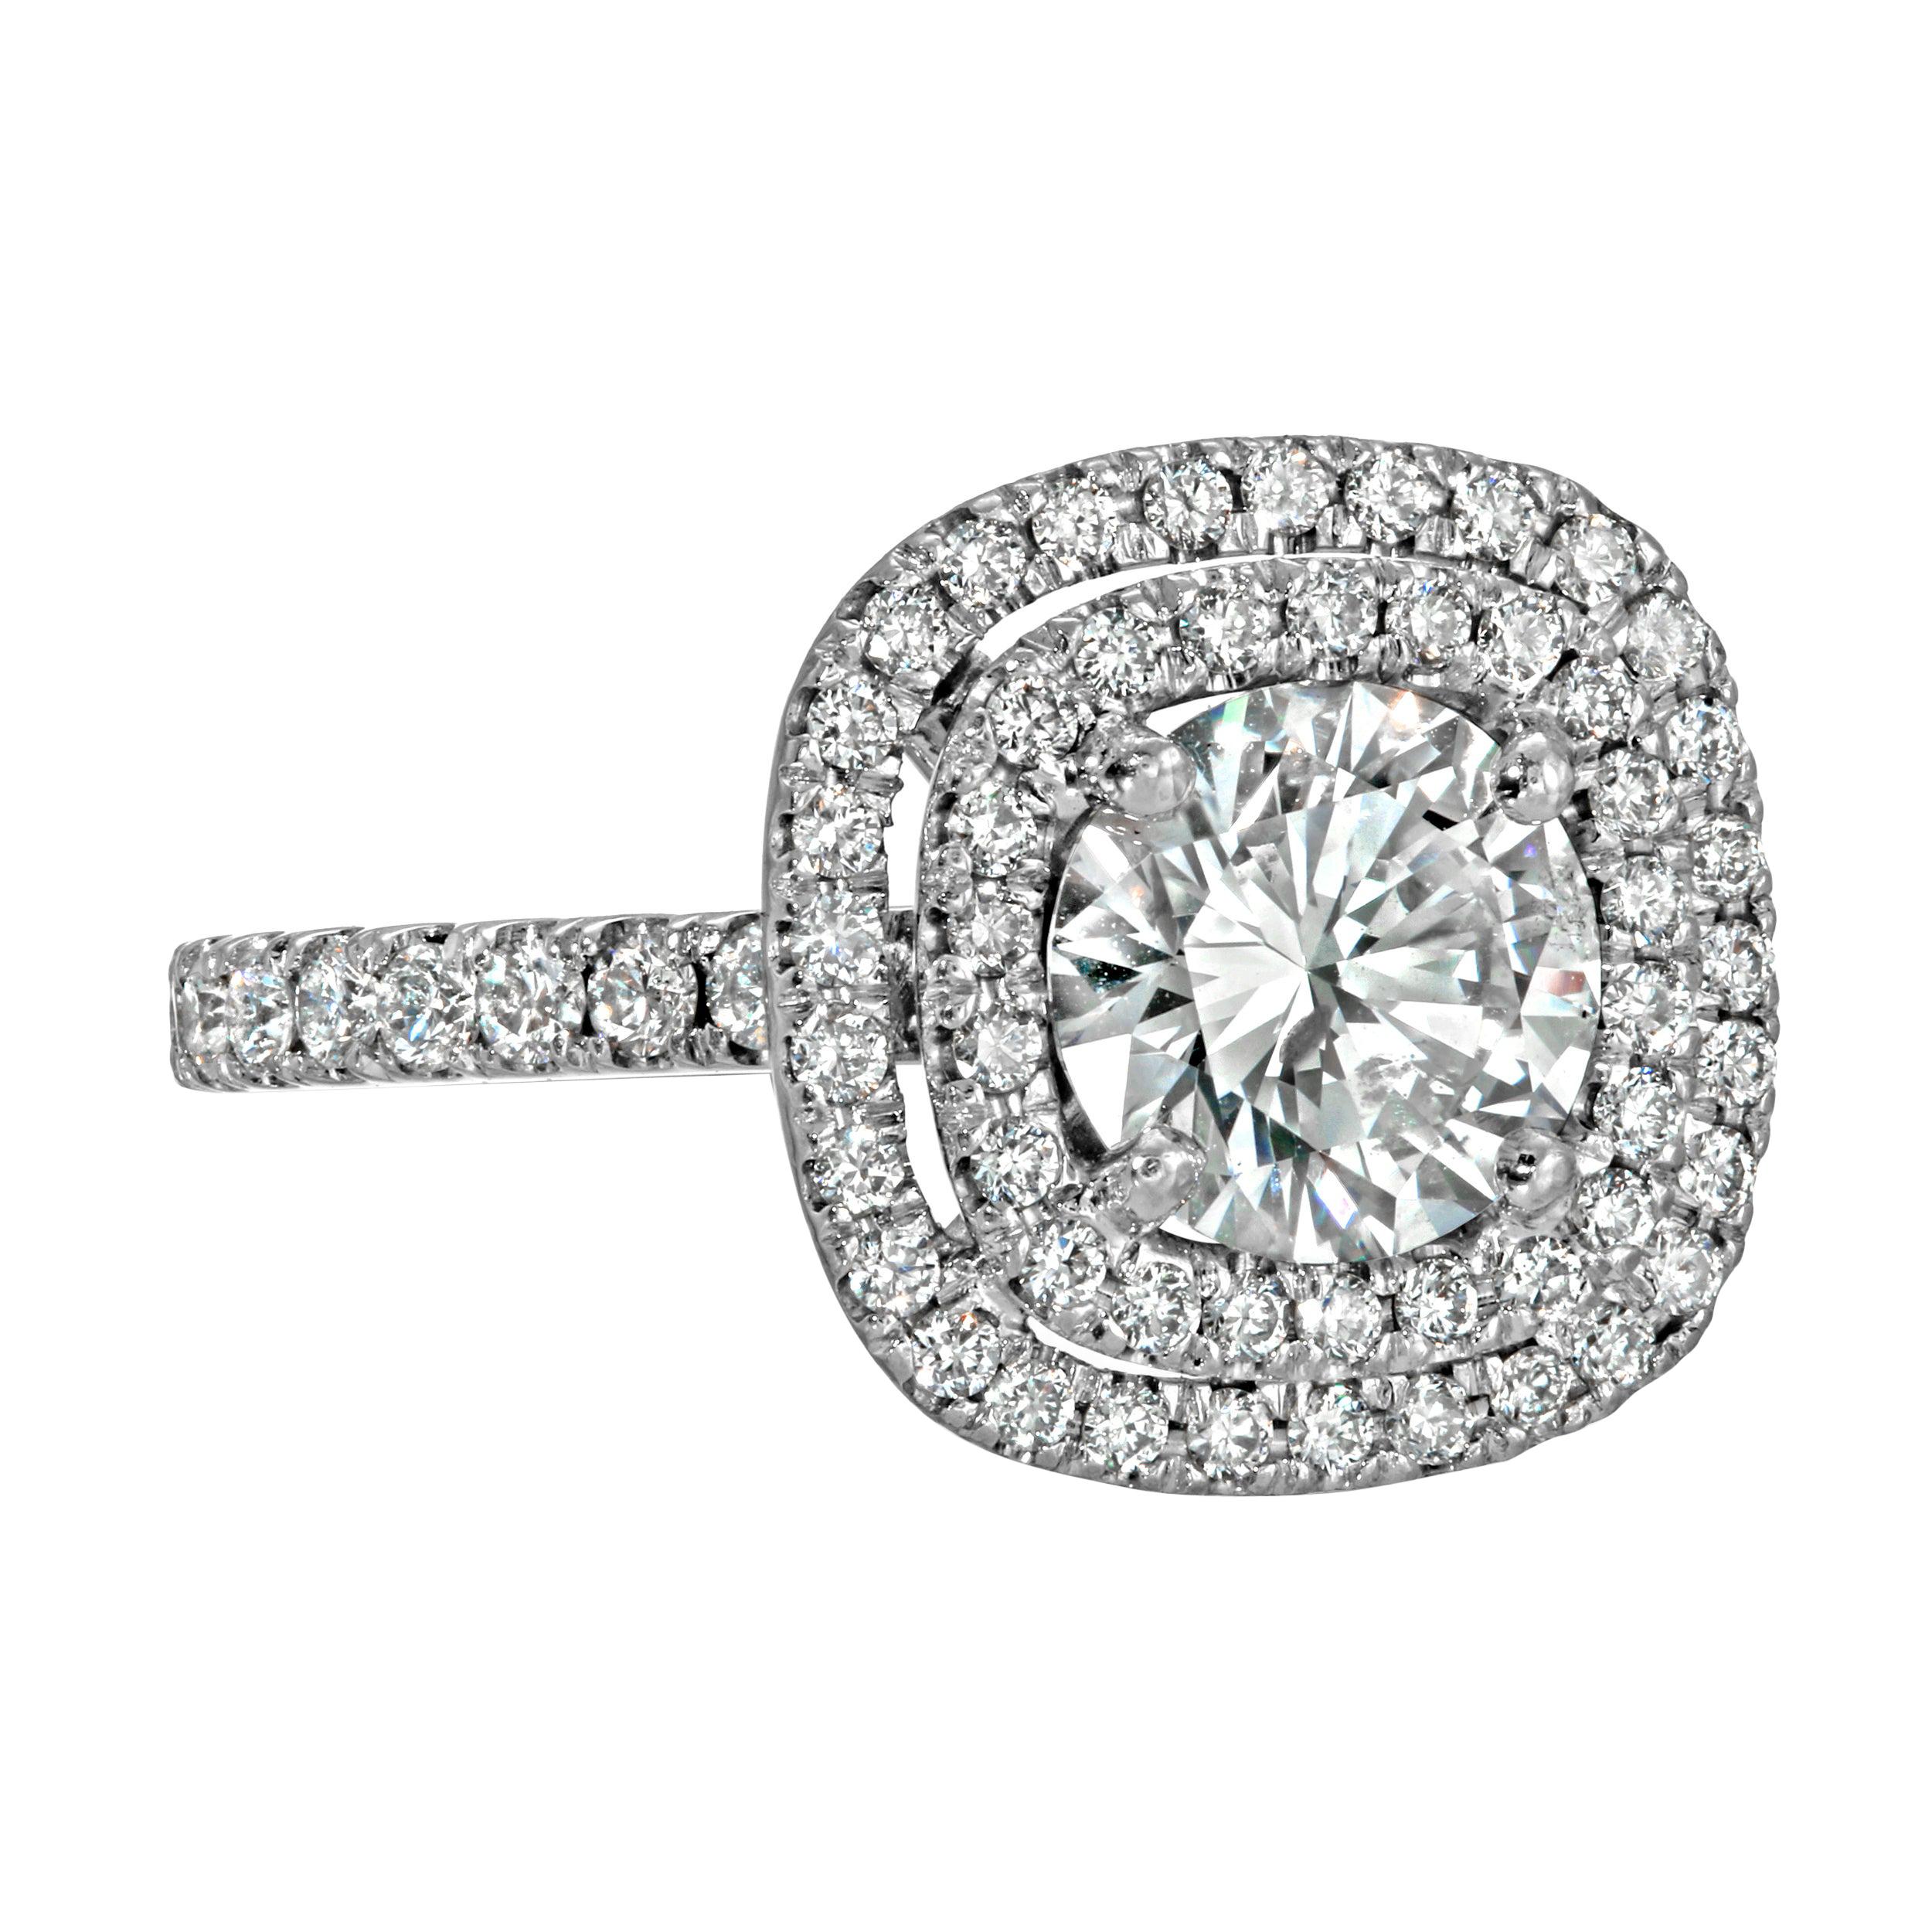 Diamond Round 1.25 Carat Engagement Ring Set in Platinum